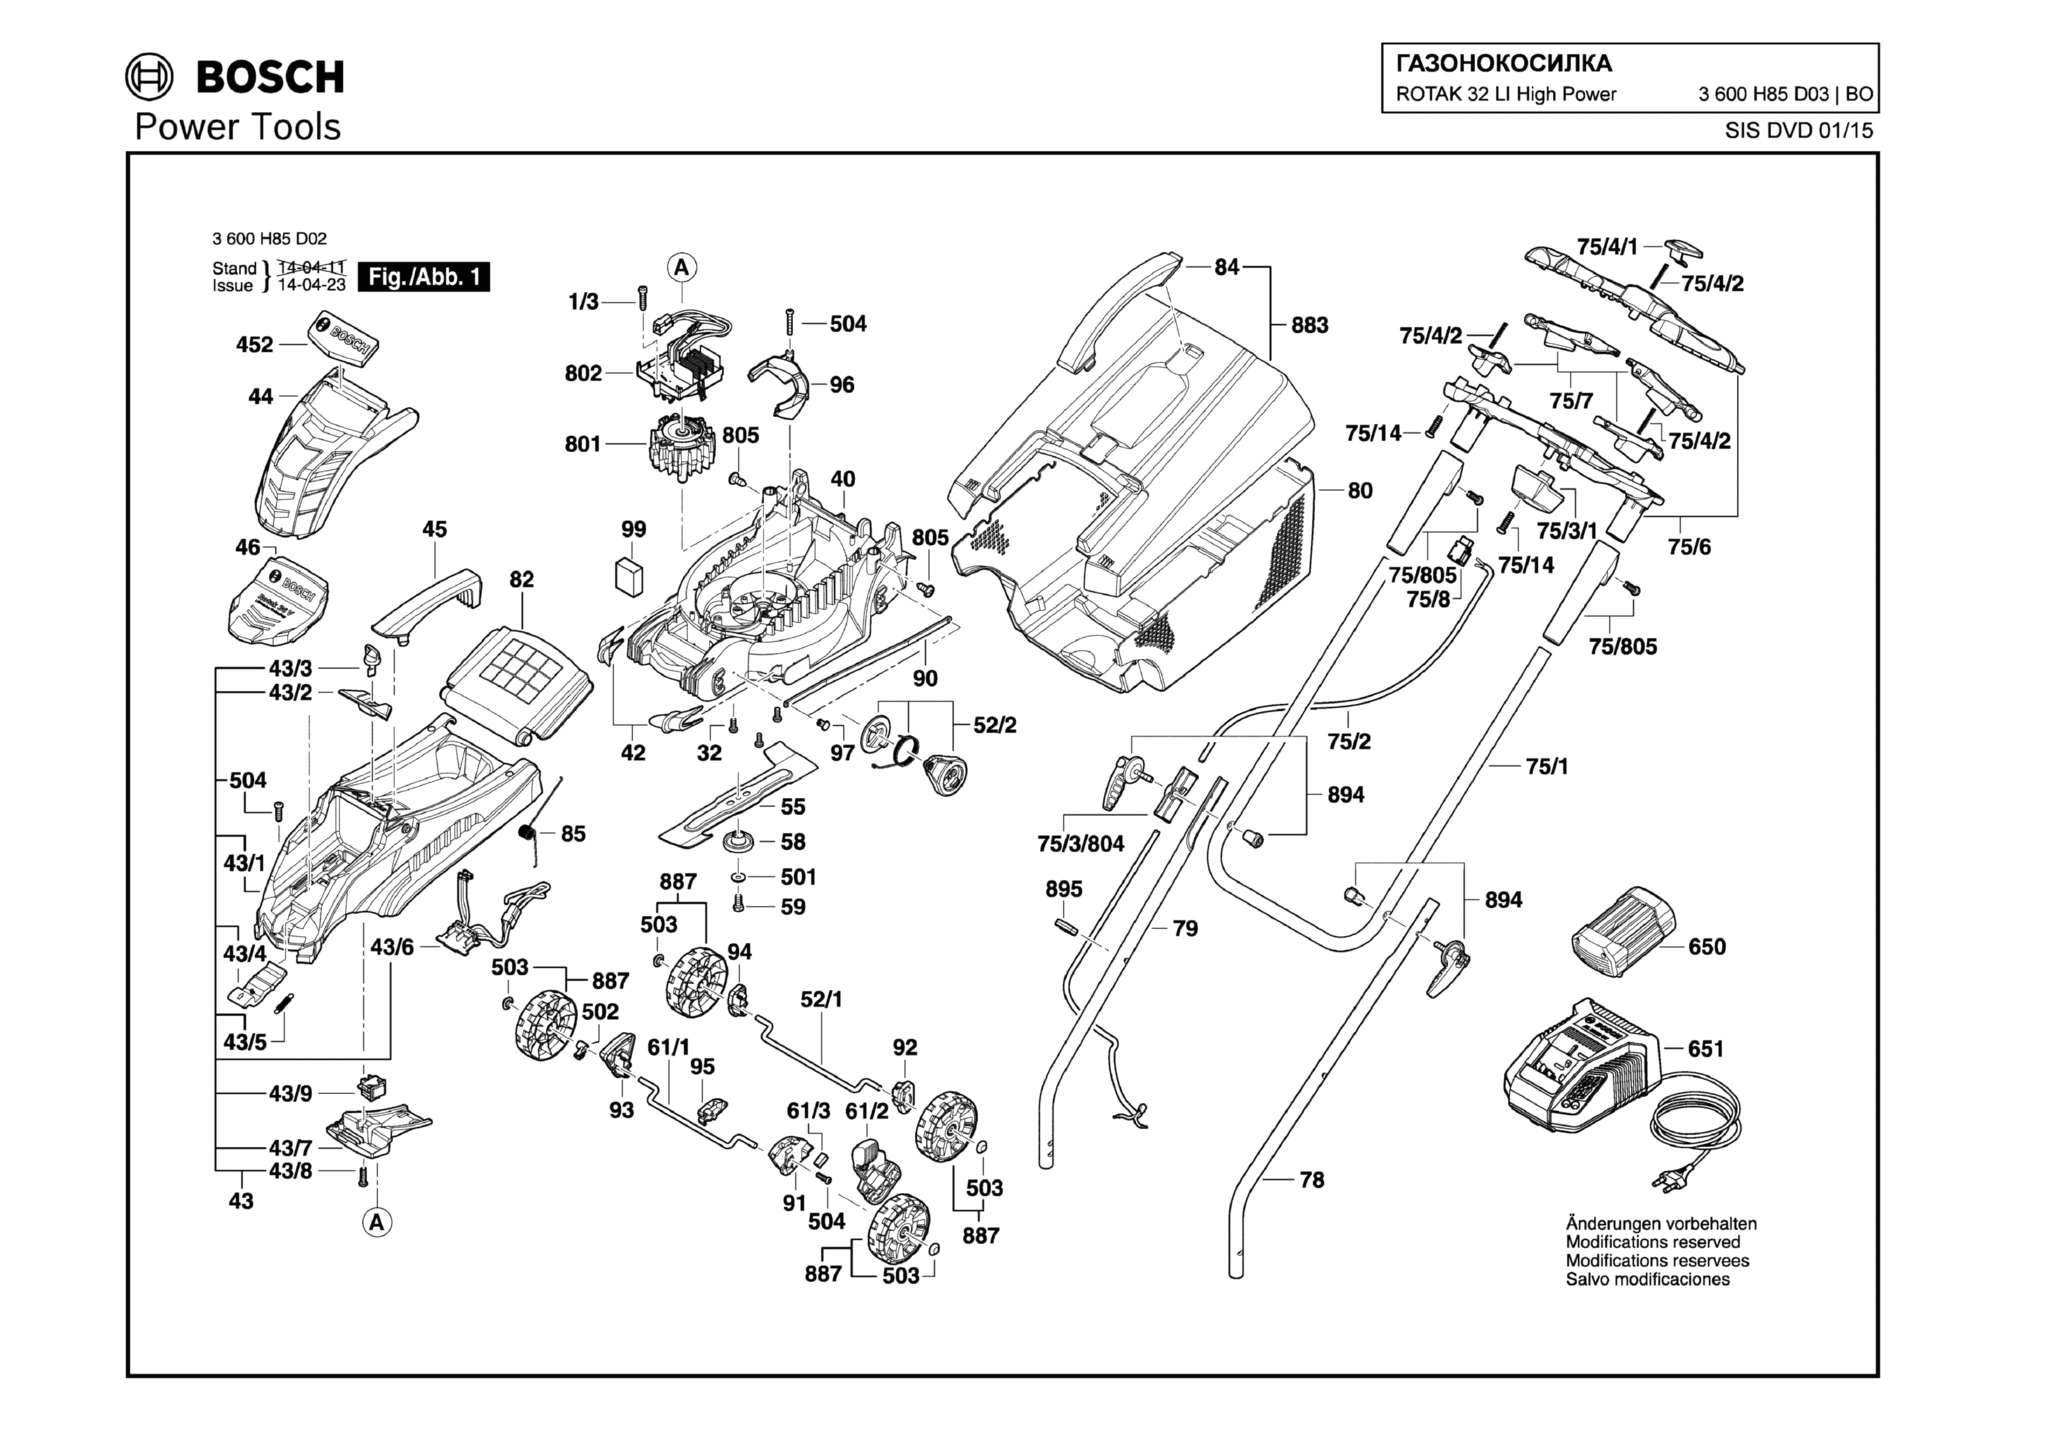 Запчасти, схема и деталировка Bosch ROTAK 32 LI HIGH POWER (ТИП 3600H85D03)